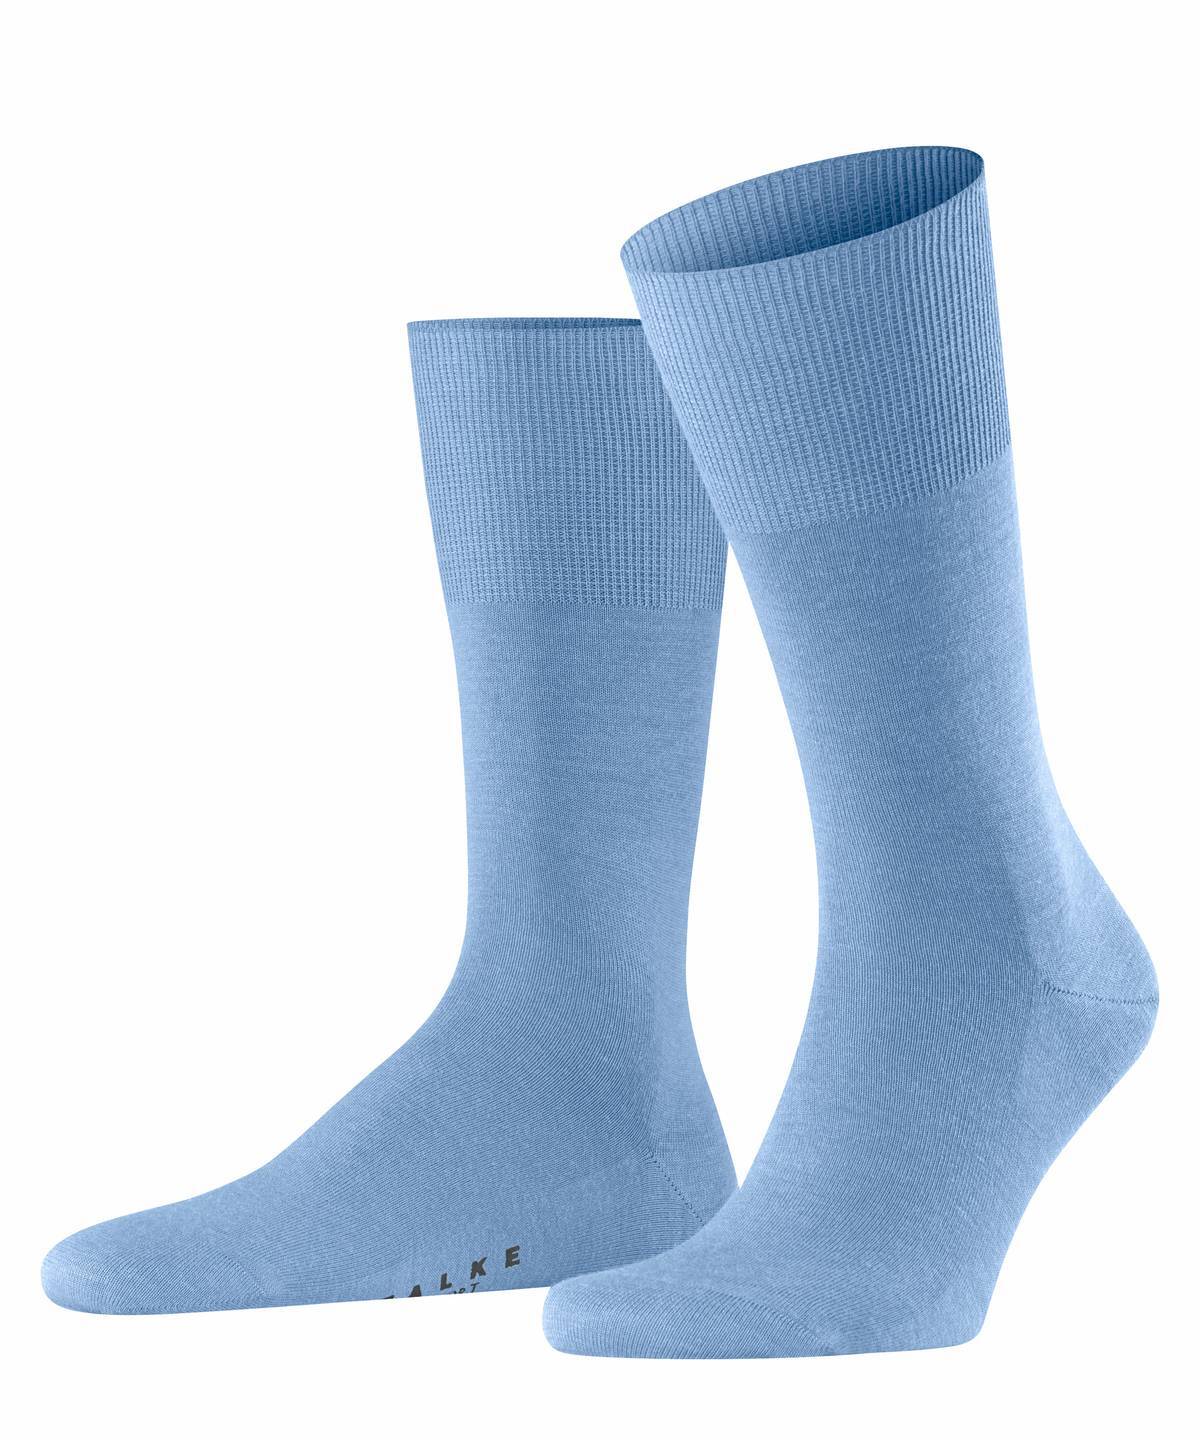 Falke Herren Socken Hersteller: Falke Bestellnummer:4031309100654